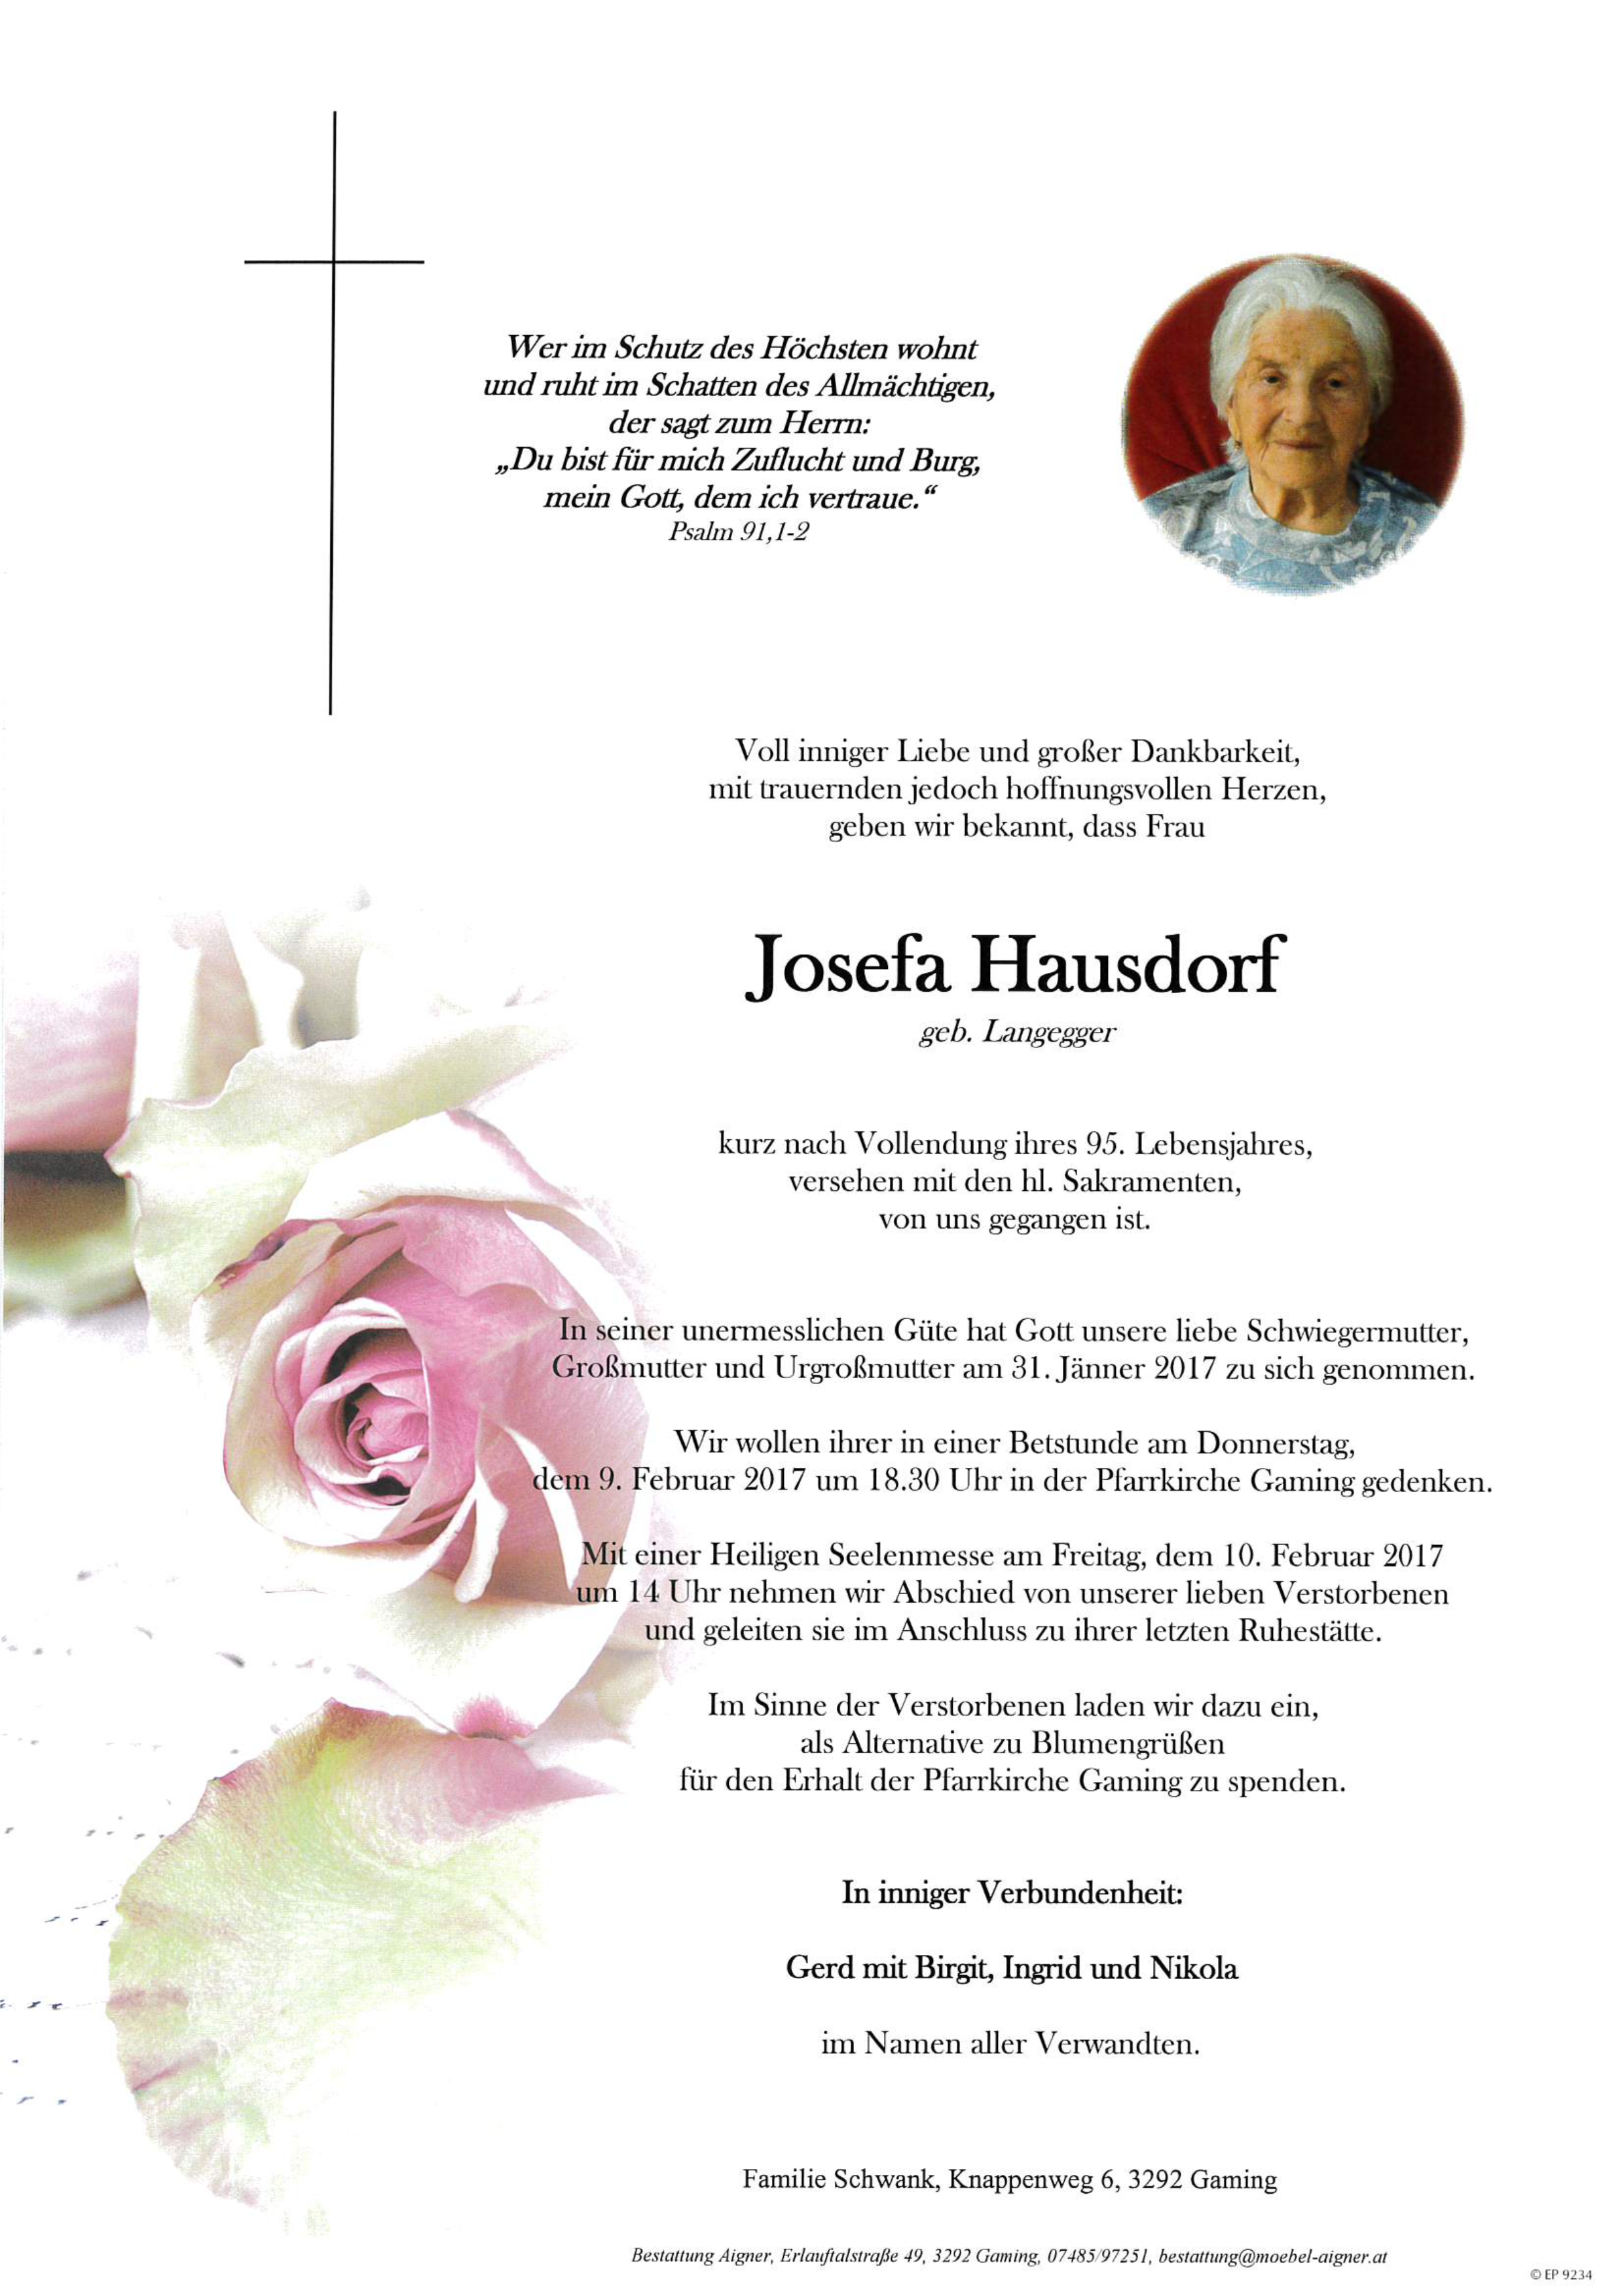 Josefa Hausdorf